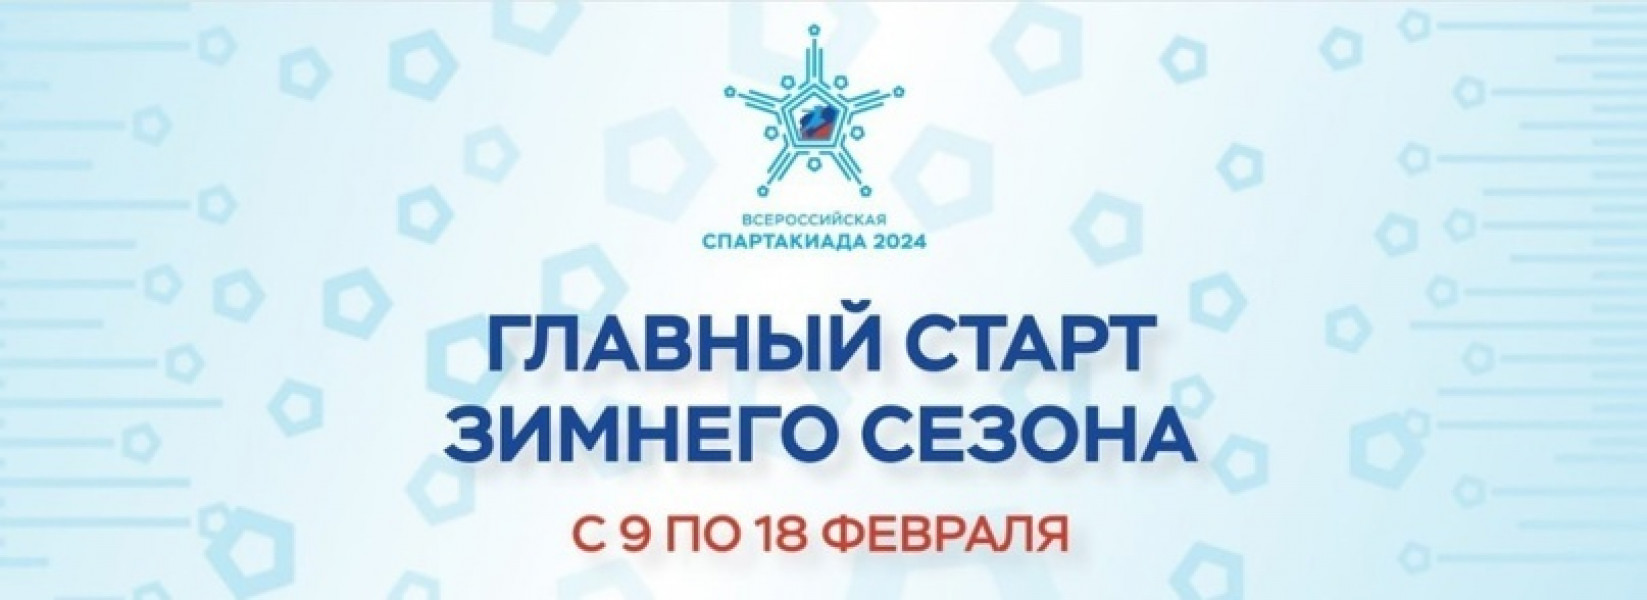 Спортсмены Самарской области представят наш регион на зимней Спартакиаде